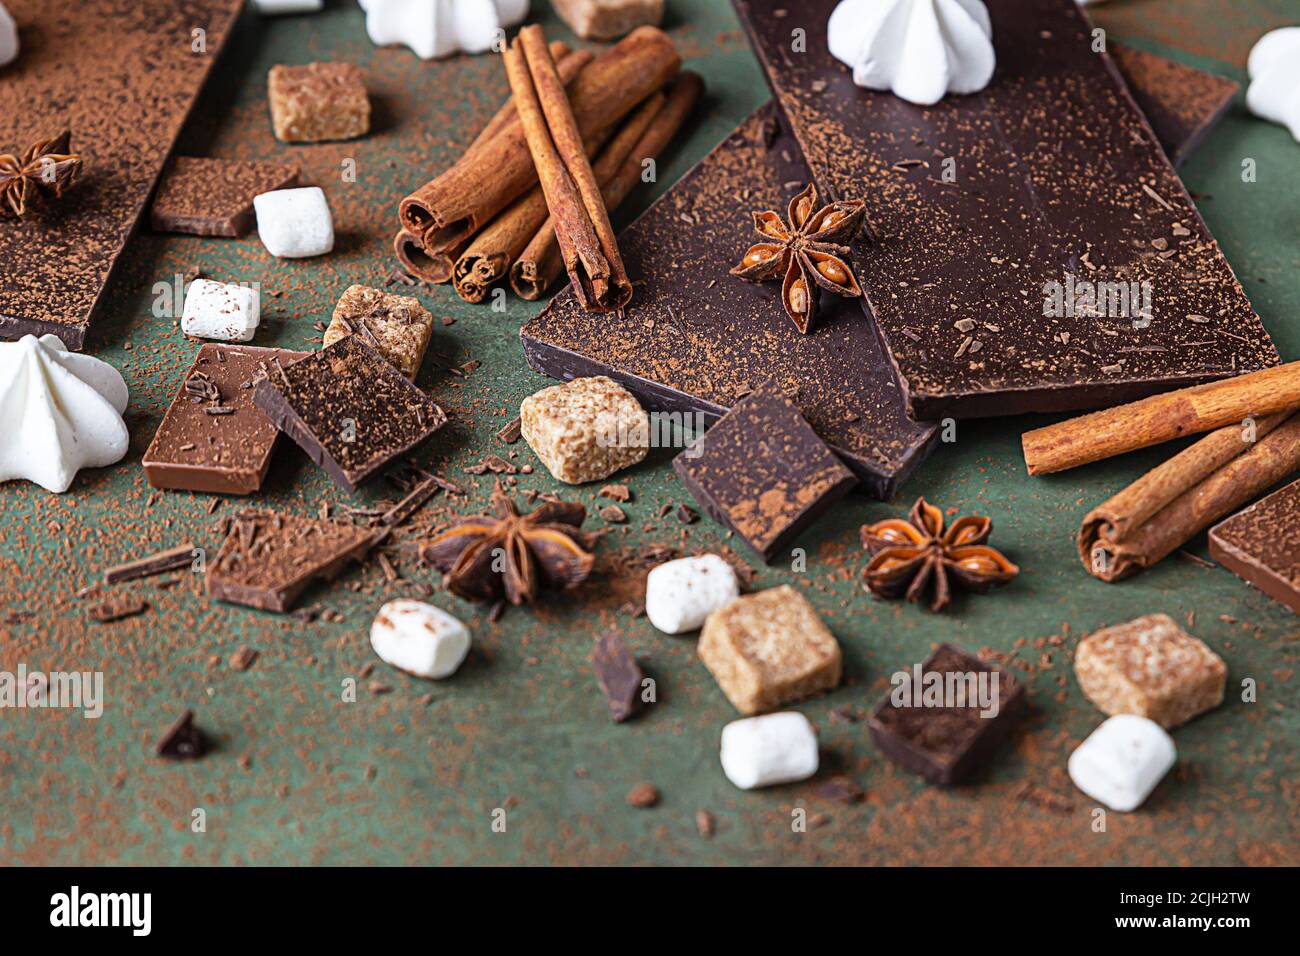 Zutaten für die Herstellung von heißer Schokolade. Dunkle und milchige Schokolade, Kakaopulver, Zimt, Anisstern, brauner Zucker, Marshmallow, Baiser und Milch. Stockfoto